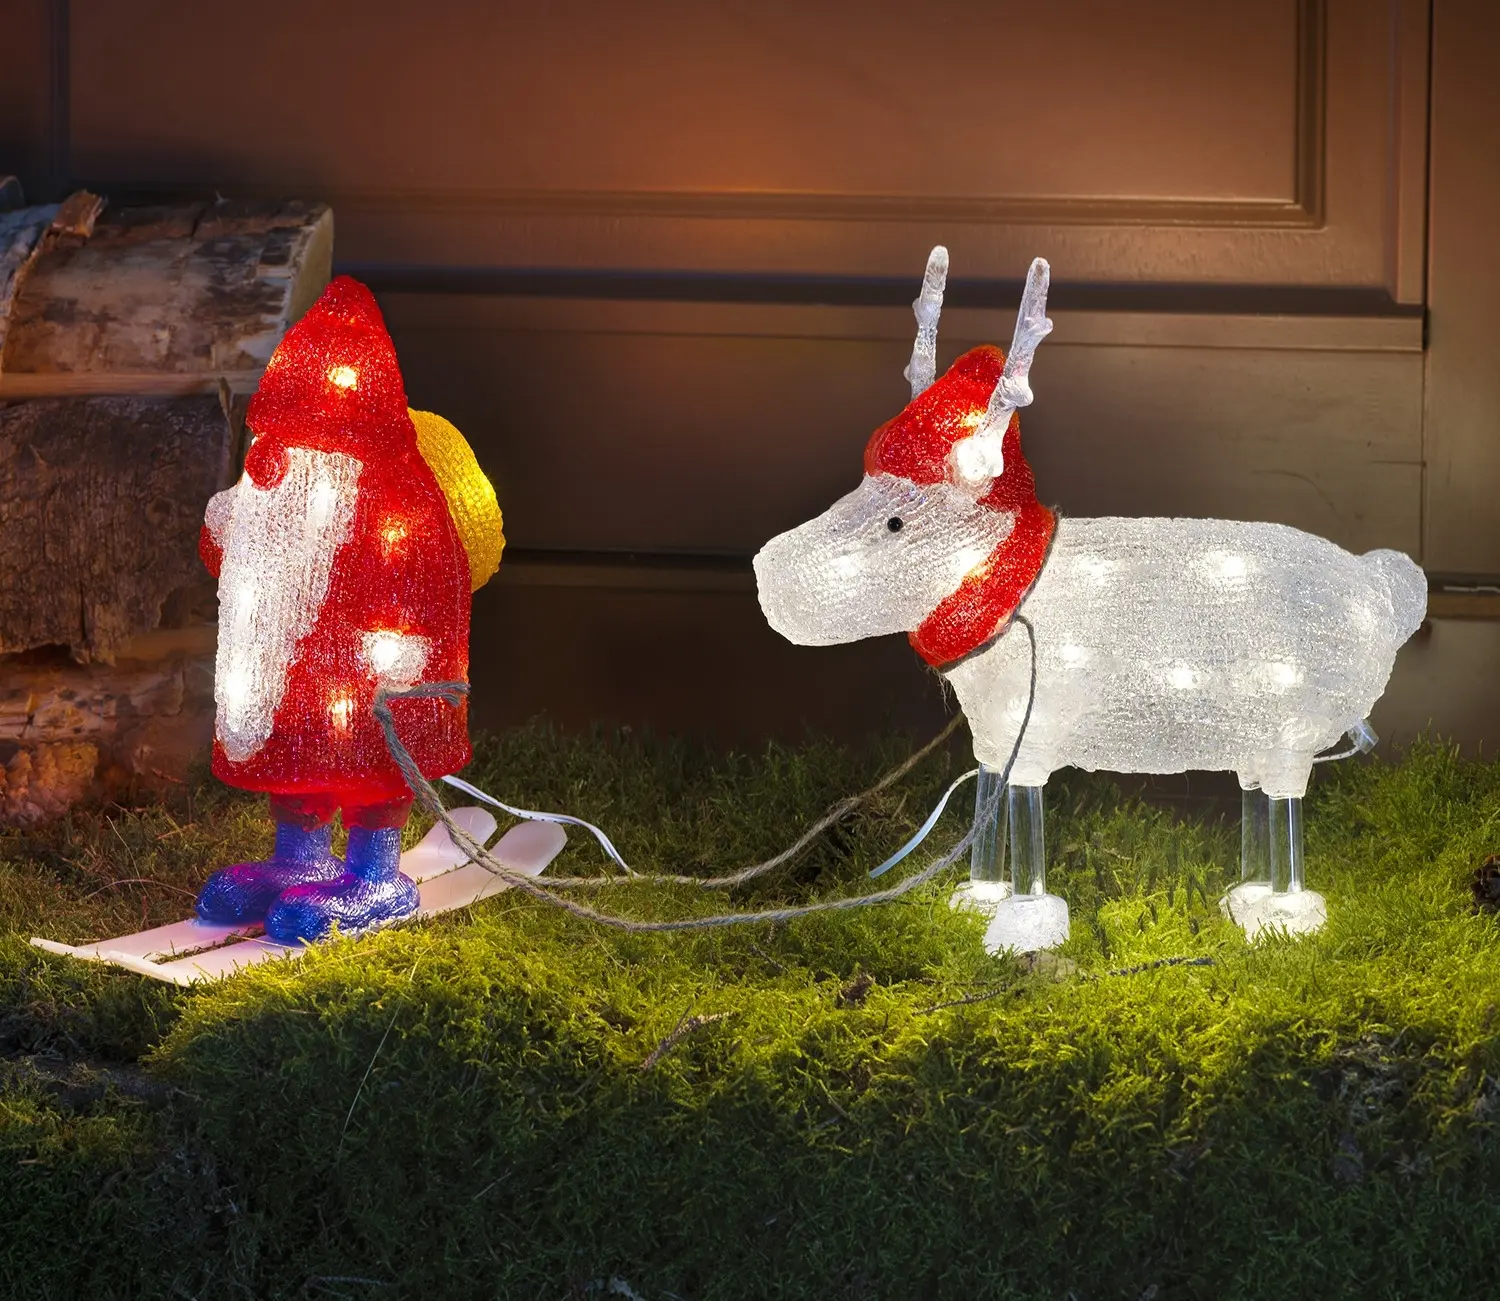 Konstsmide 2-Piece Light Up Santa with Reindeer Set